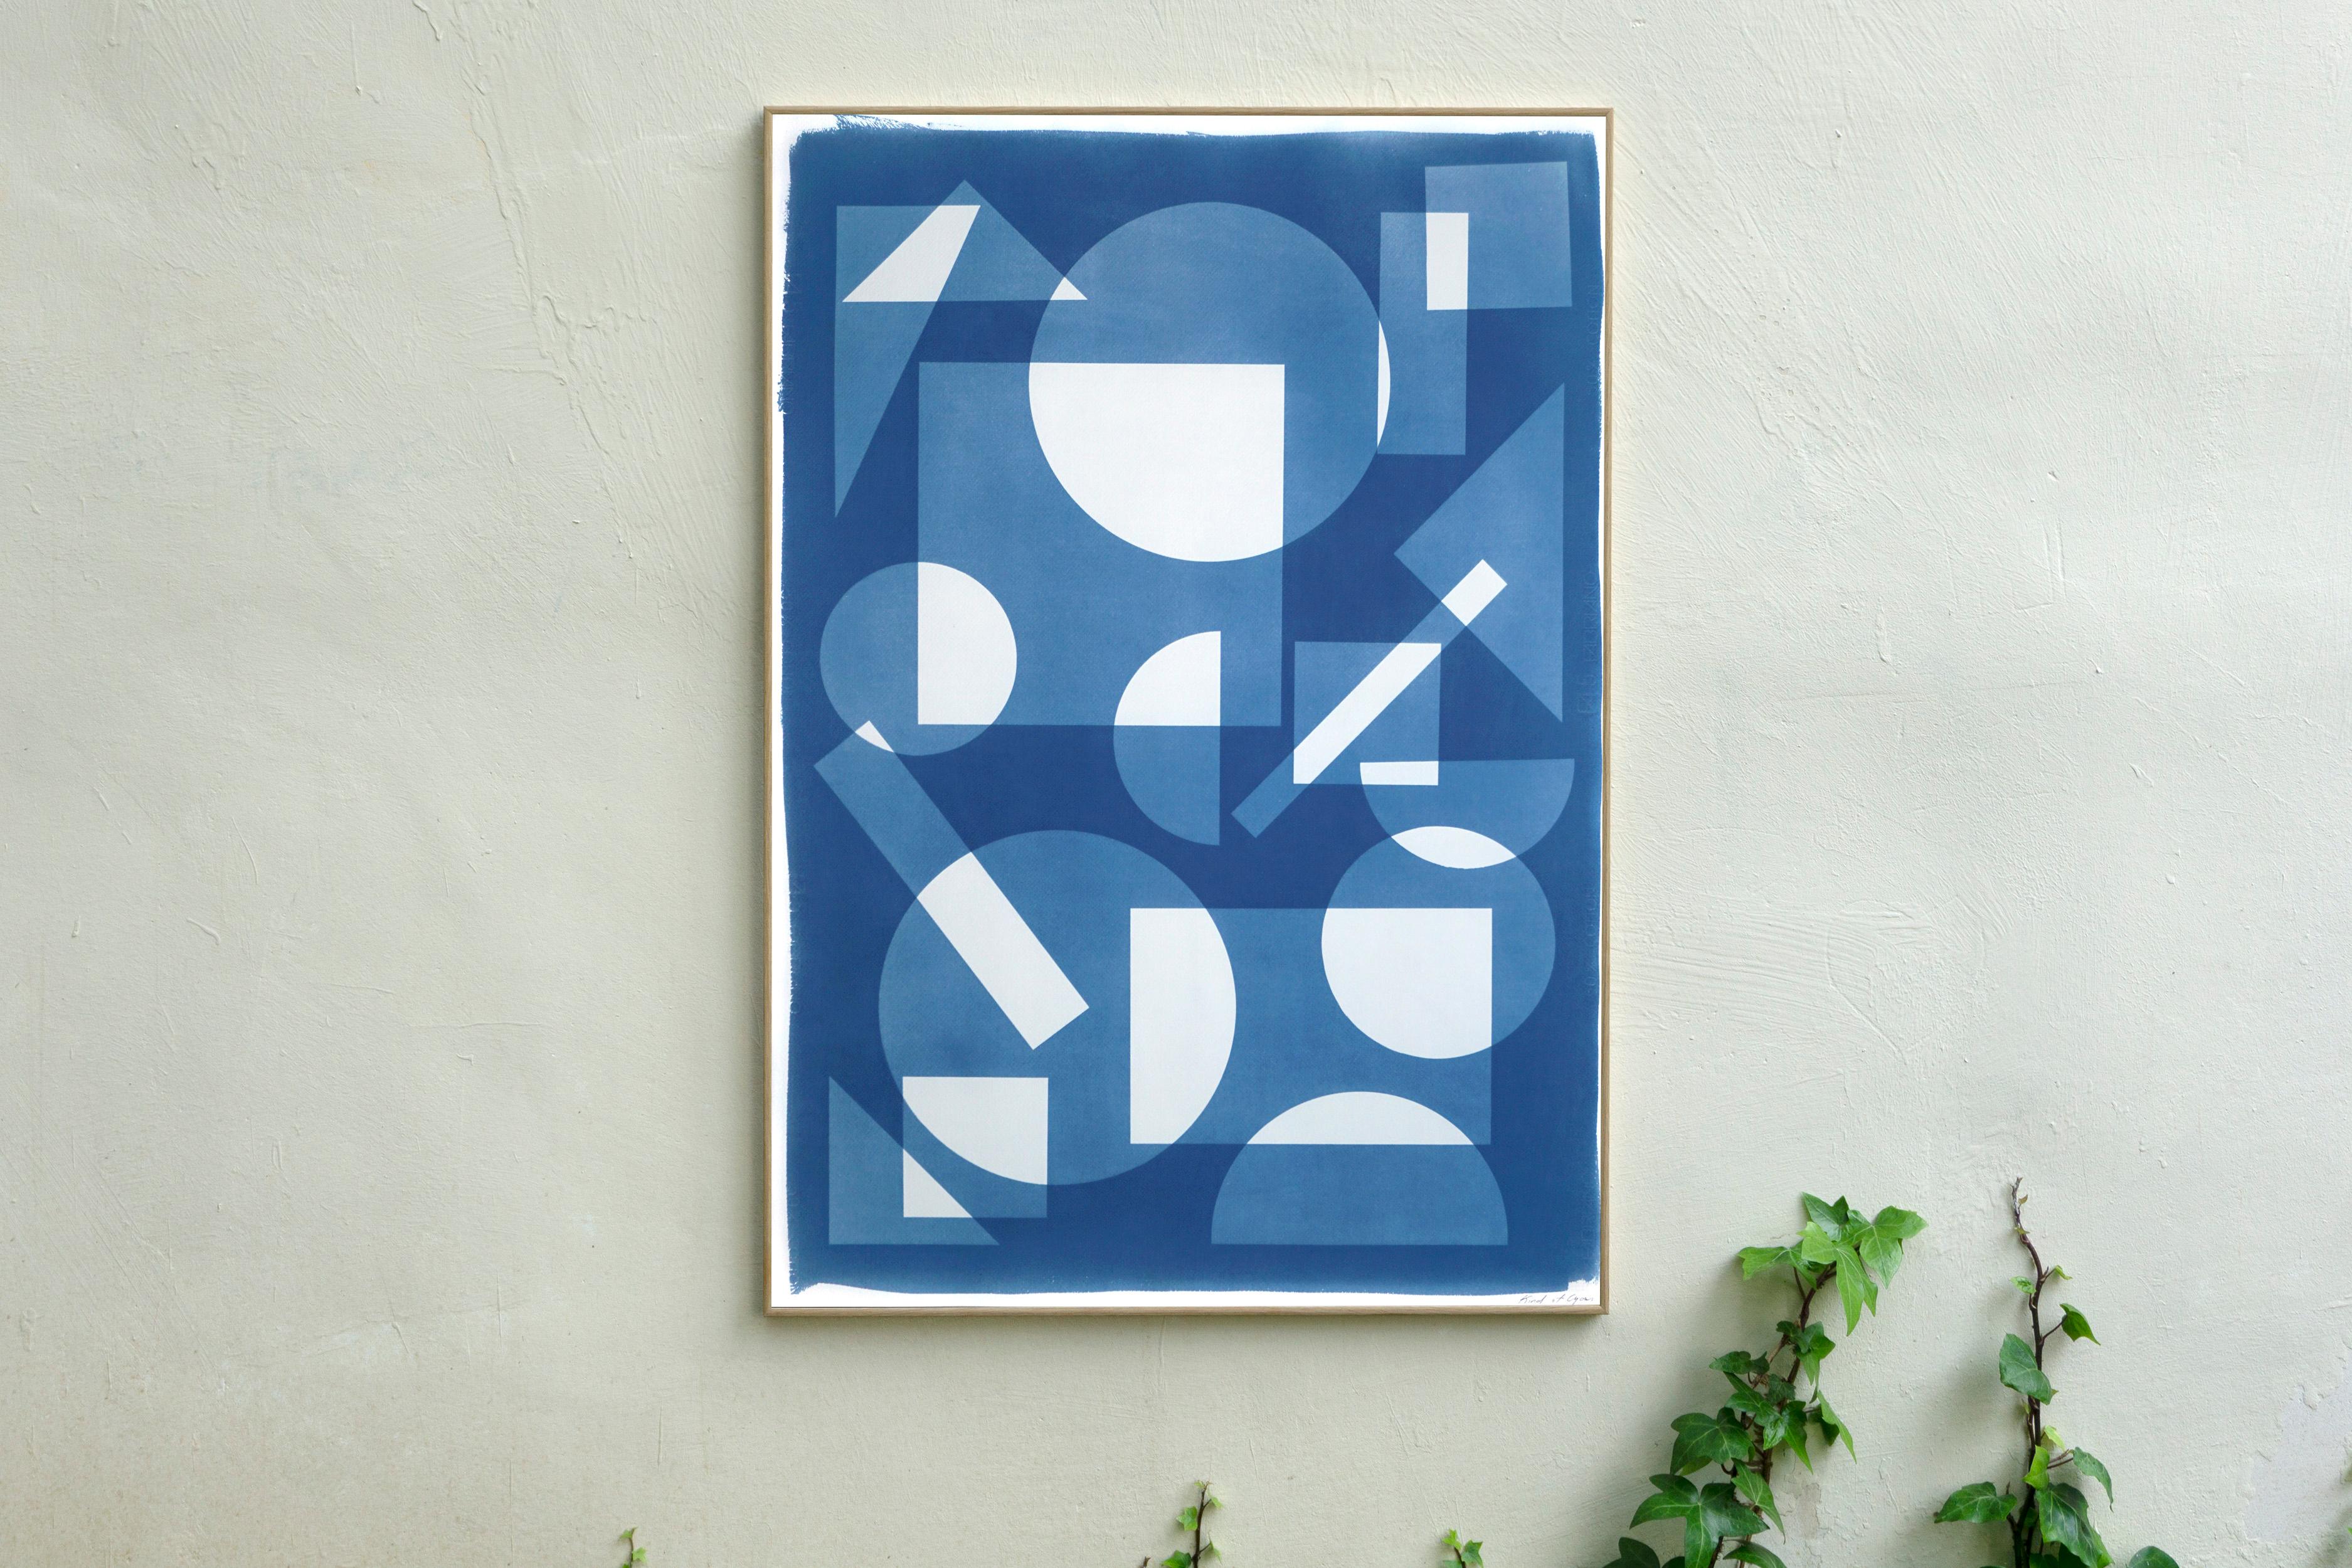 Monotype constructiviste de formes simples flottant dans l'espace, géométrie blanche et bleue - Constructiviste Print par Kind of Cyan